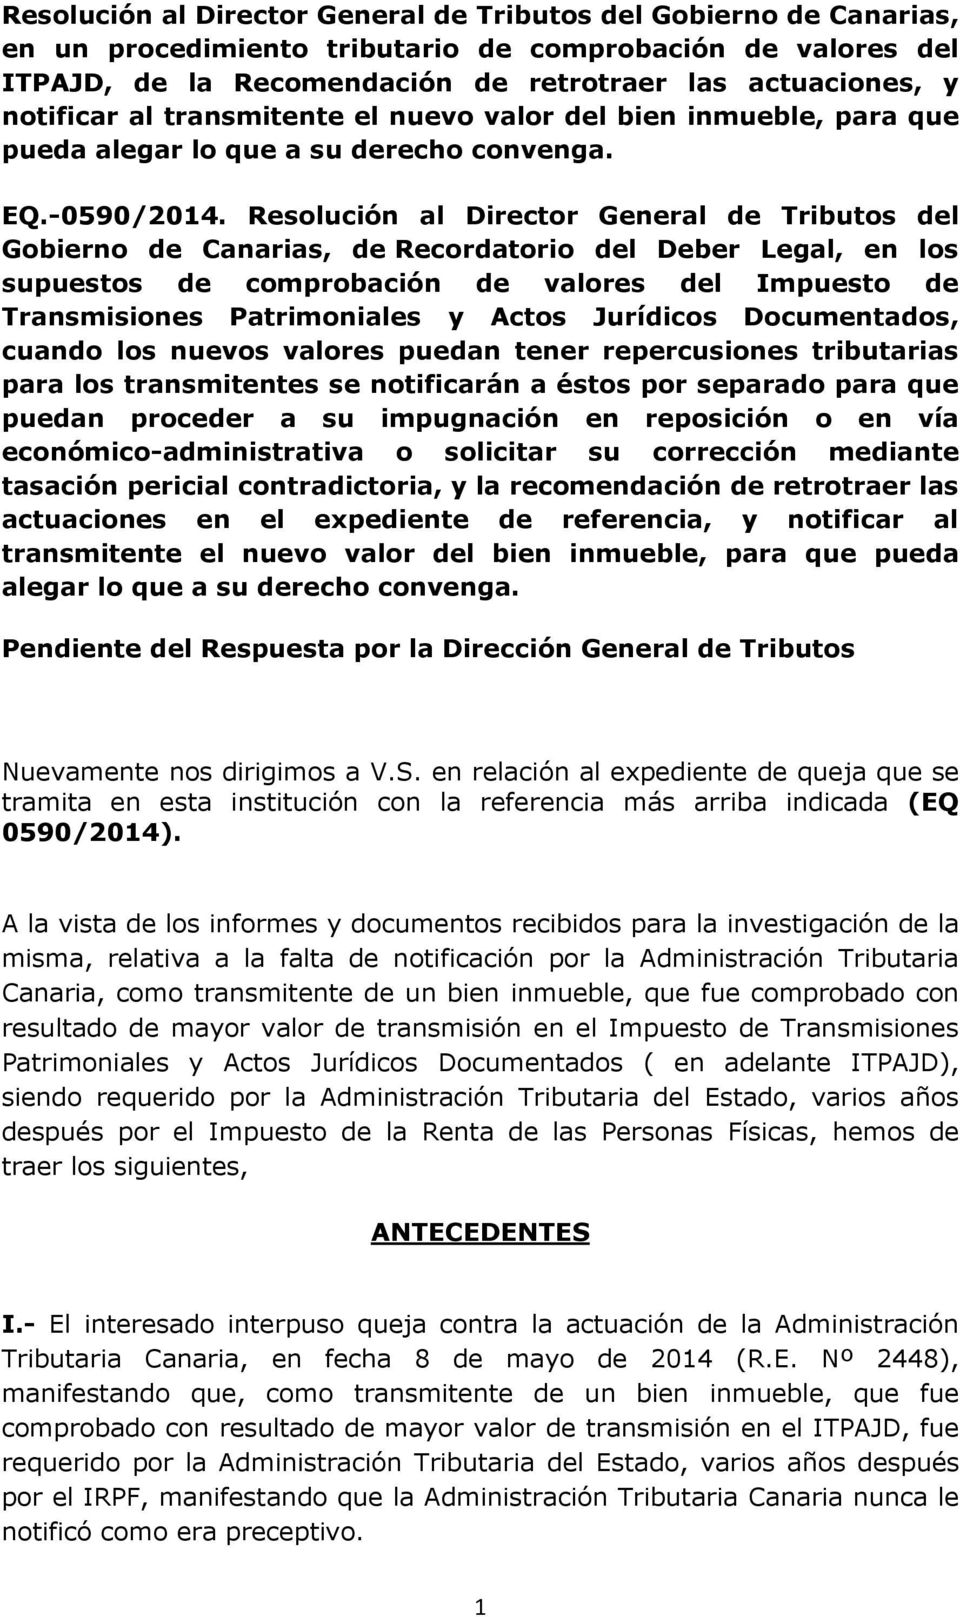 Resolución al Director General de Tributos del Gobierno de Canarias, de Recordatorio del Deber Legal, en los supuestos de comprobación de valores del Impuesto de Transmisiones Patrimoniales y Actos